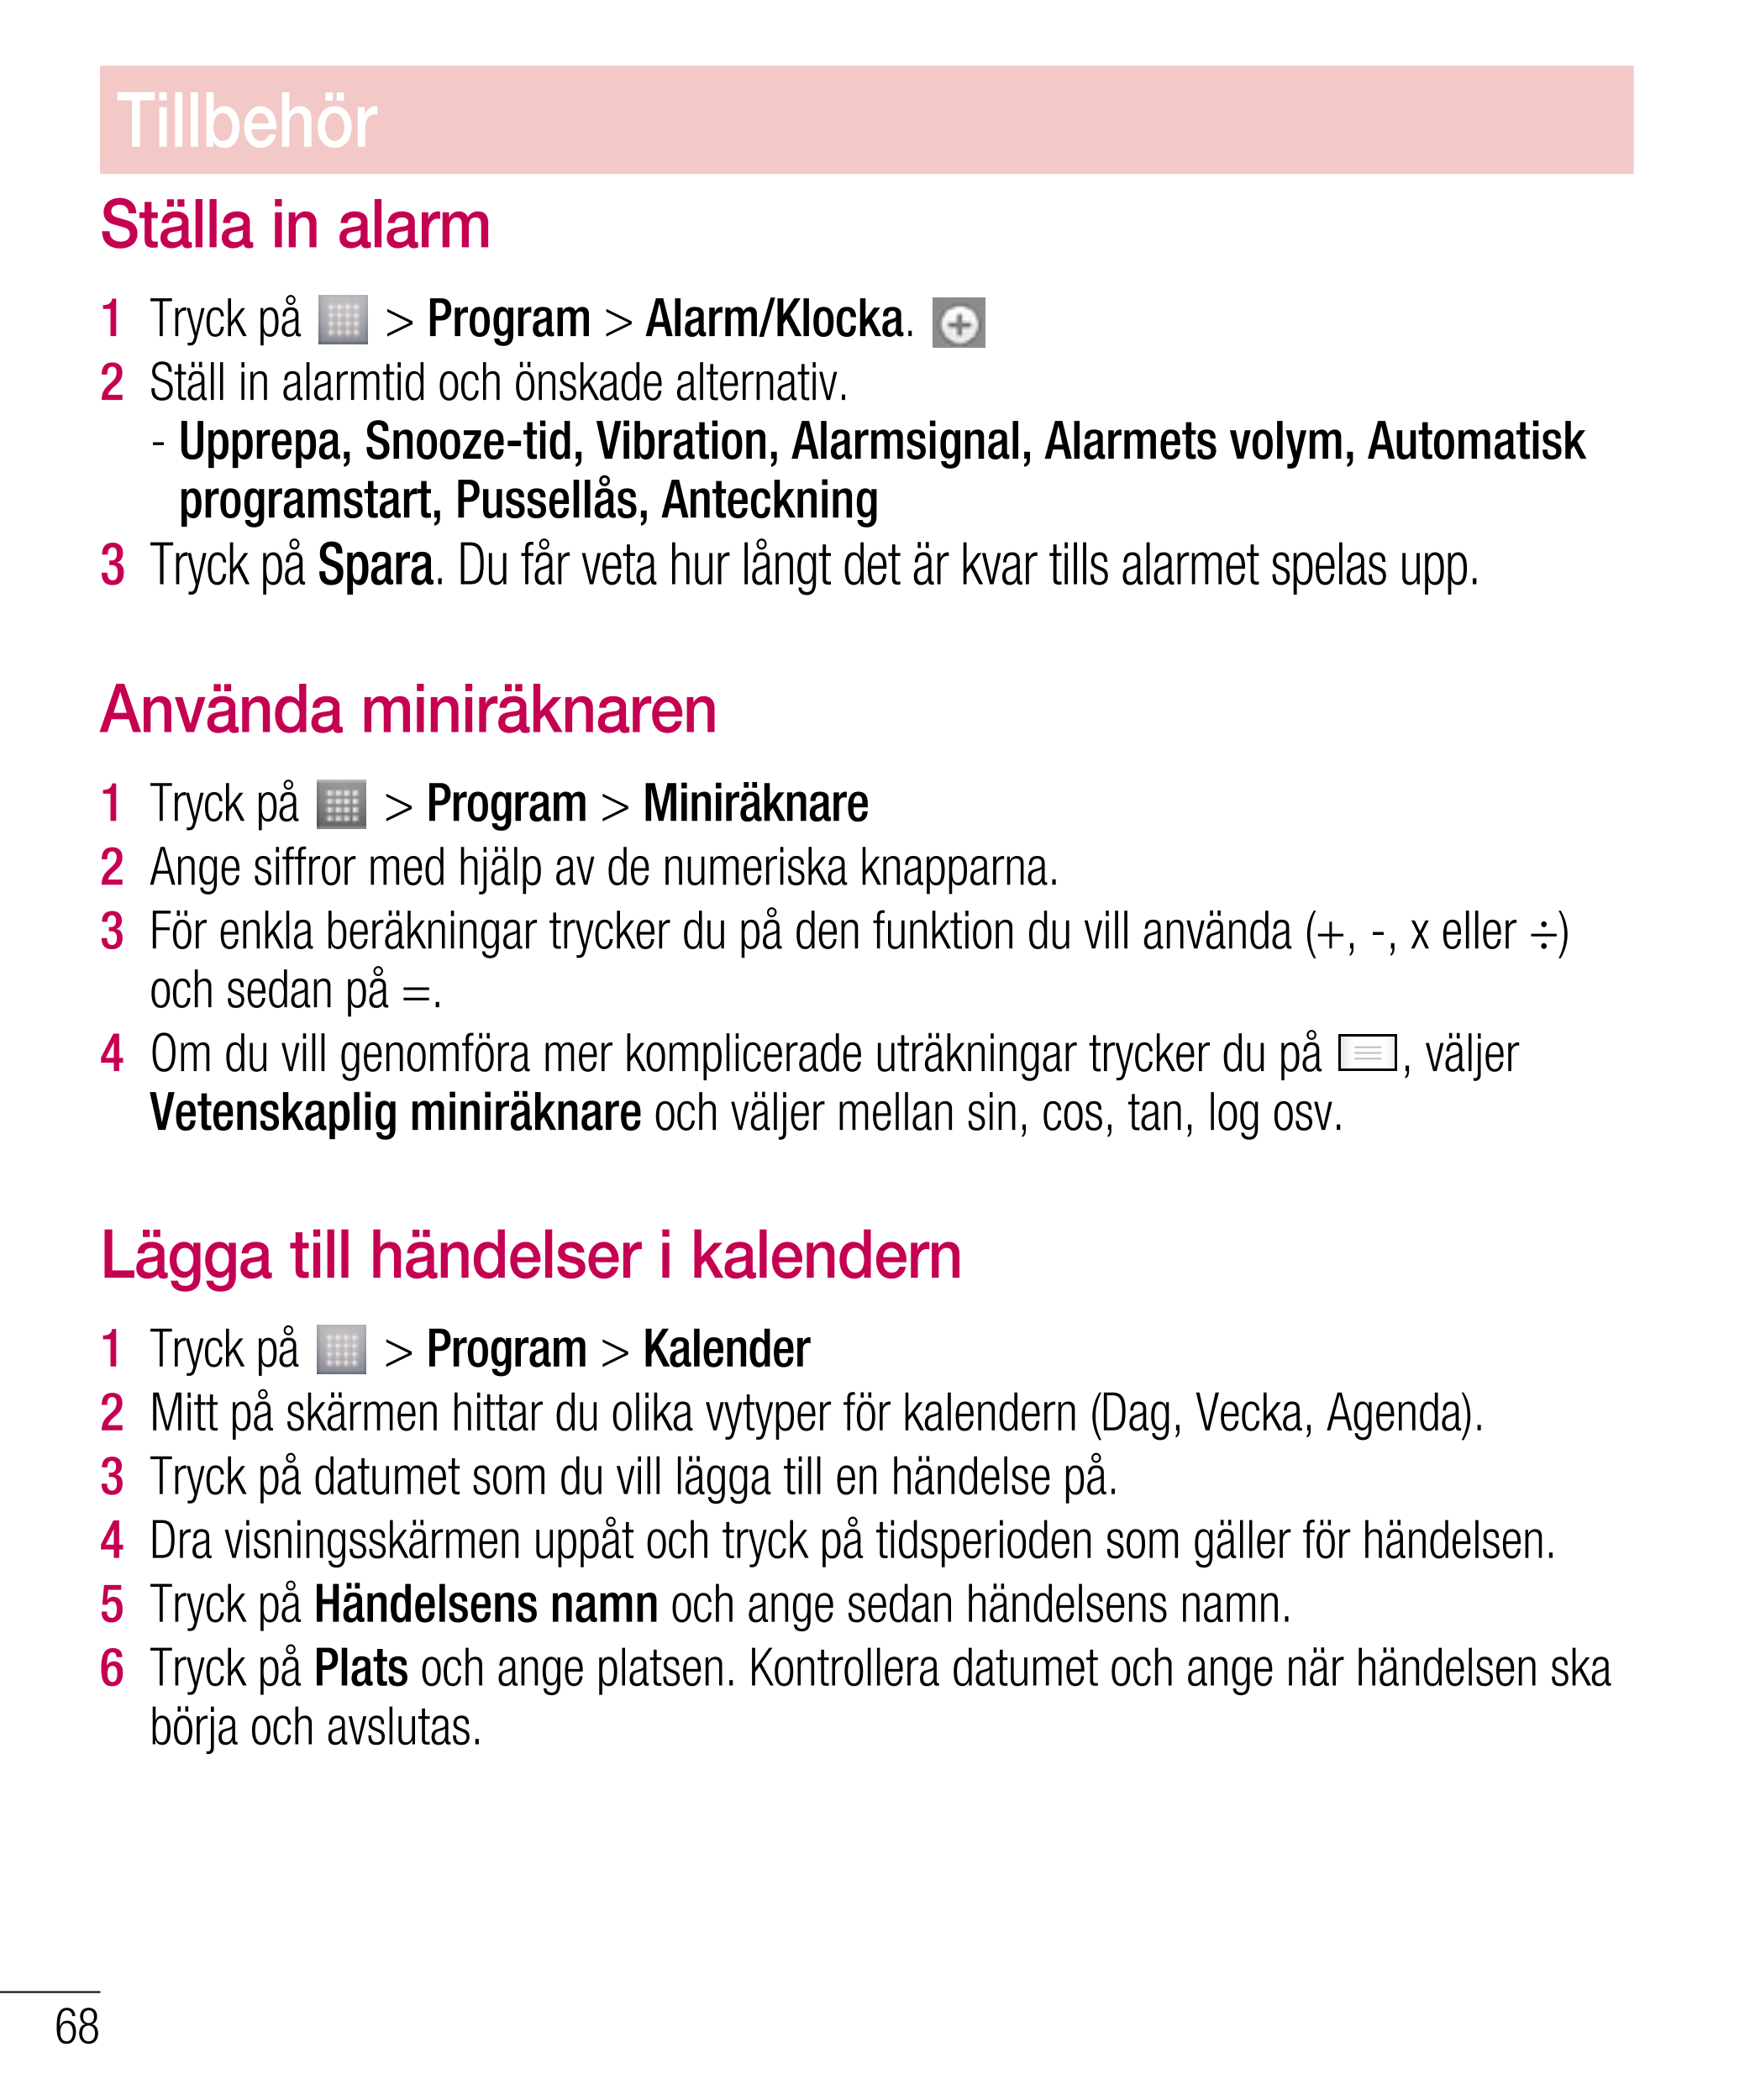 Tillbehör
Ställa in alarm
1    Tryck på   >  Program >  Alarm/Klocka. 
2    Ställ in alarmtid och önskade alternativ. 
-   Uppre